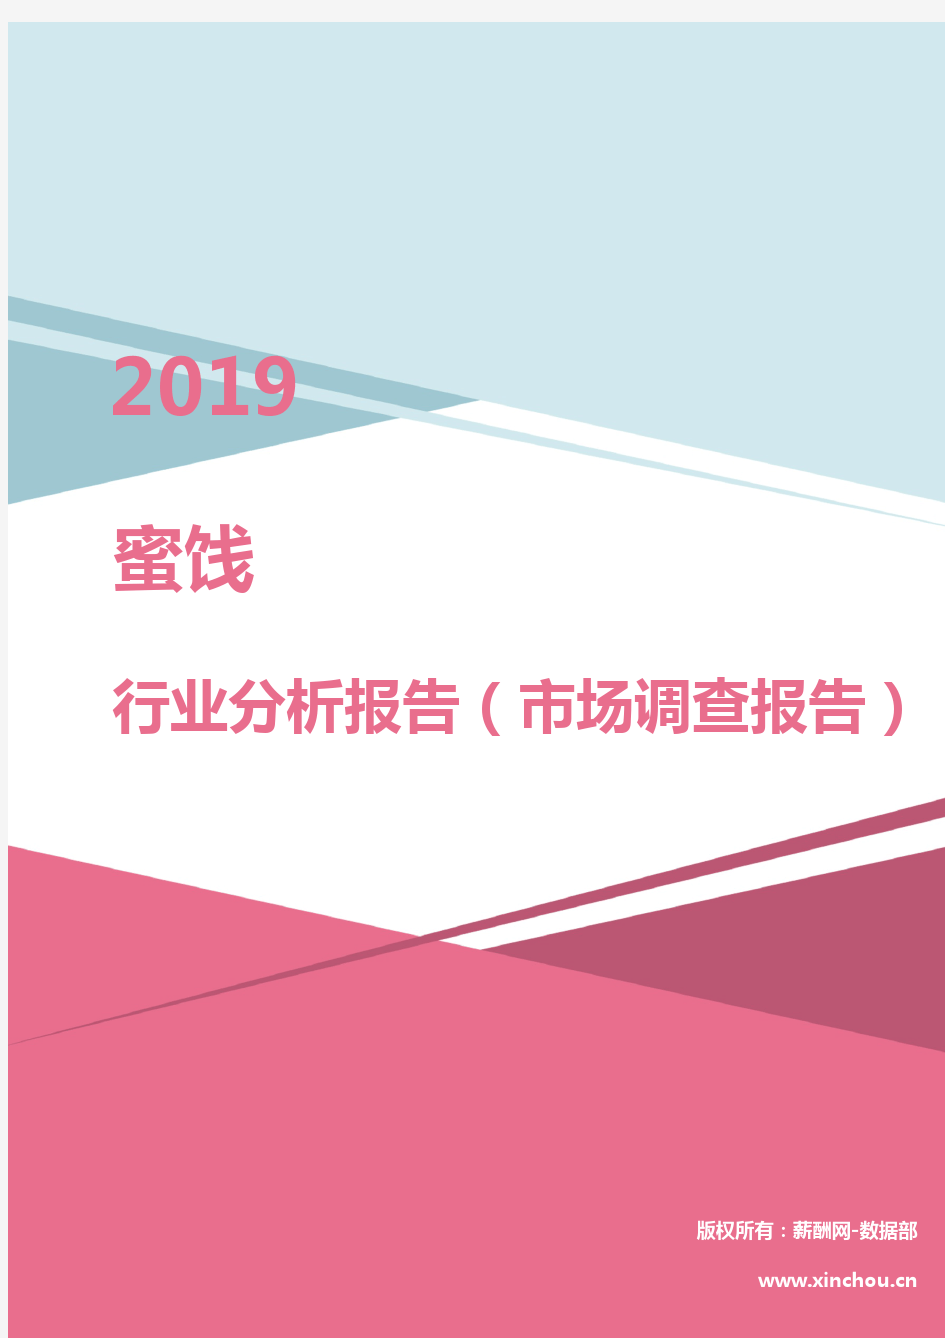 2019年蜜饯行业分析报告(市场调查报告)